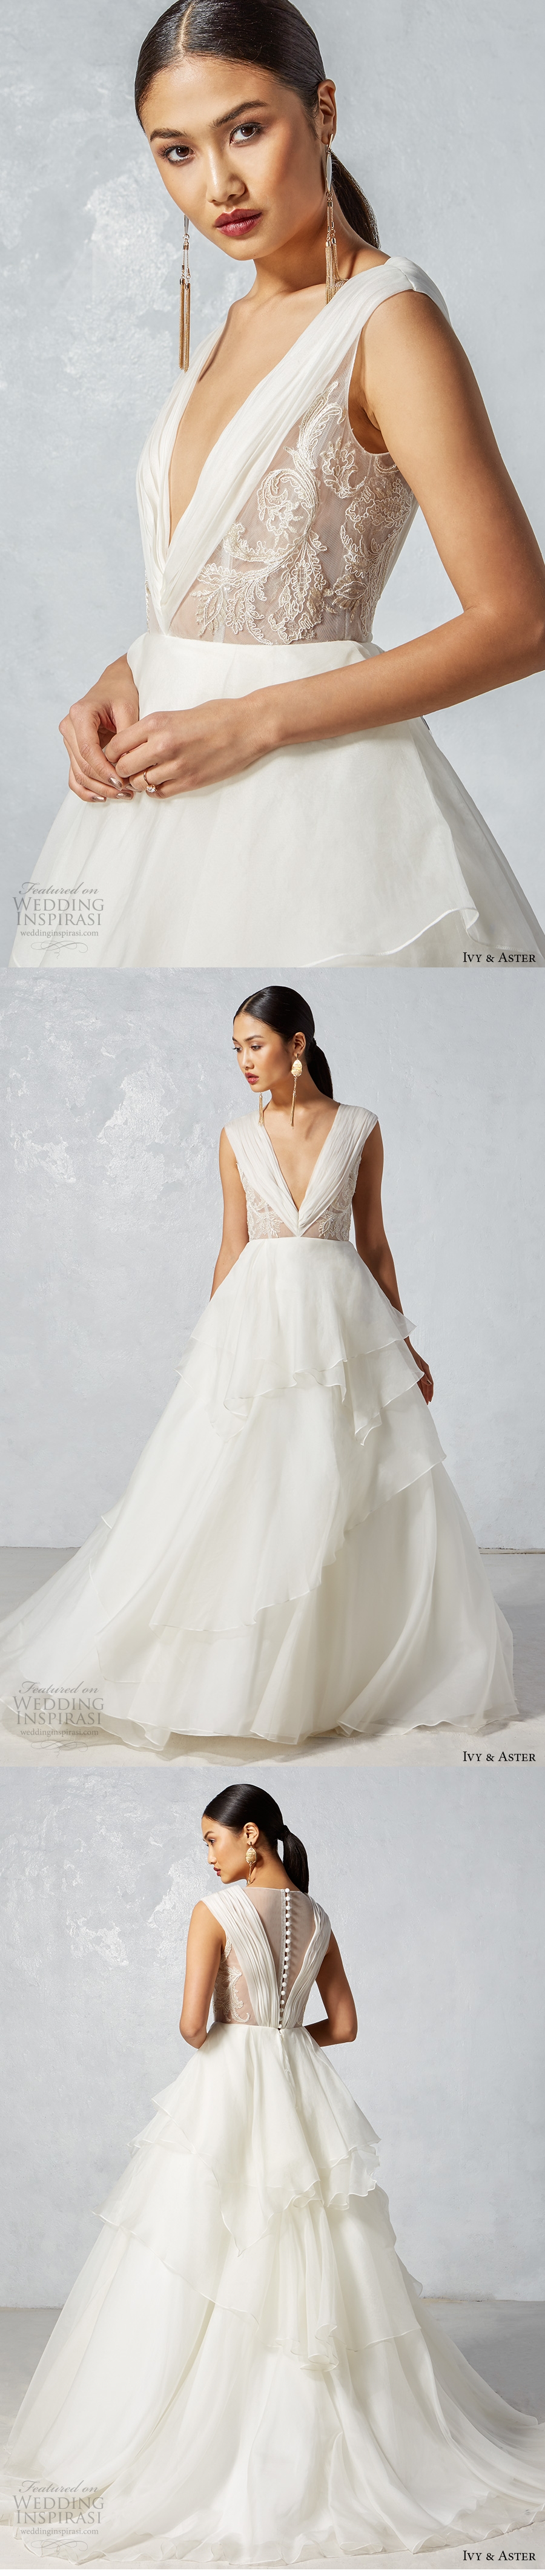 Váy cưới đẹp với chất liệu organza bồng bềnh quyến rũ